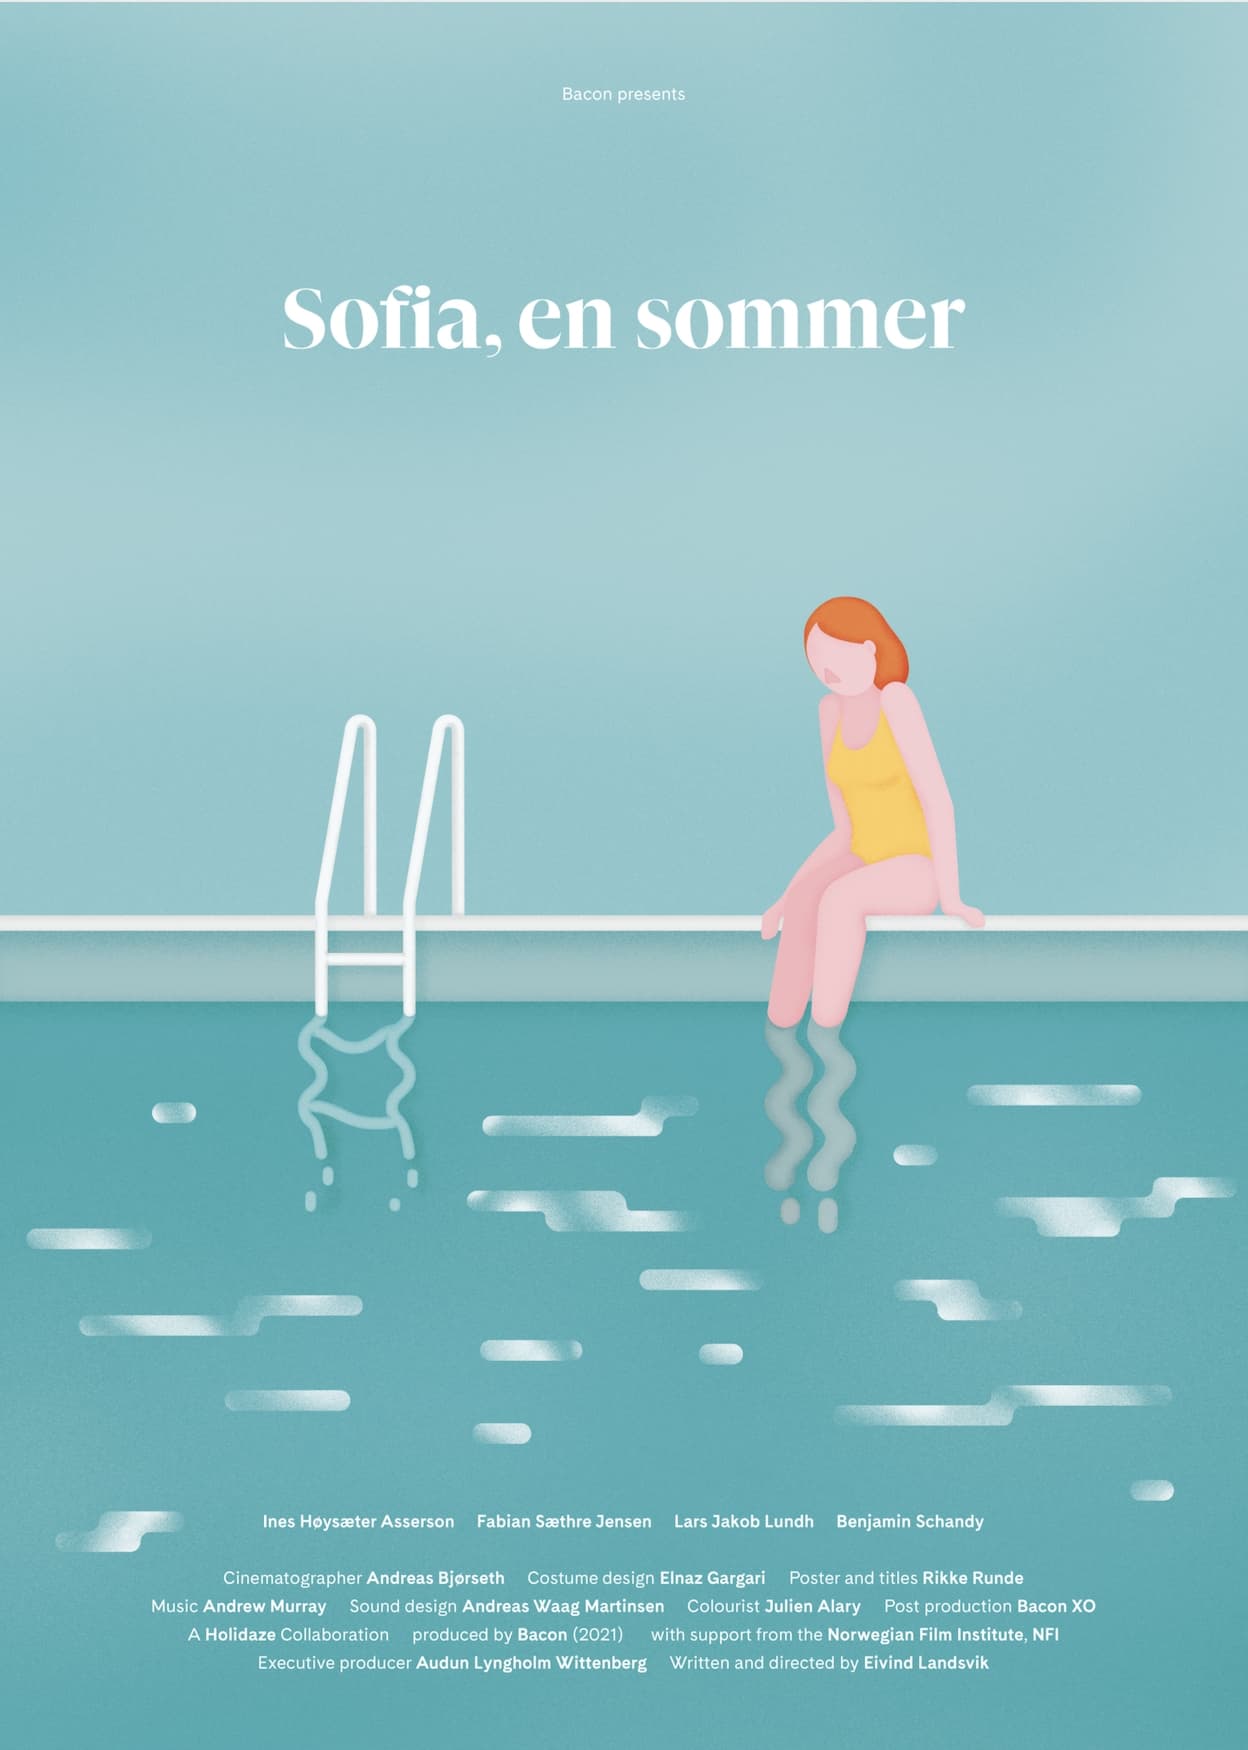 Sofia, Last Summer